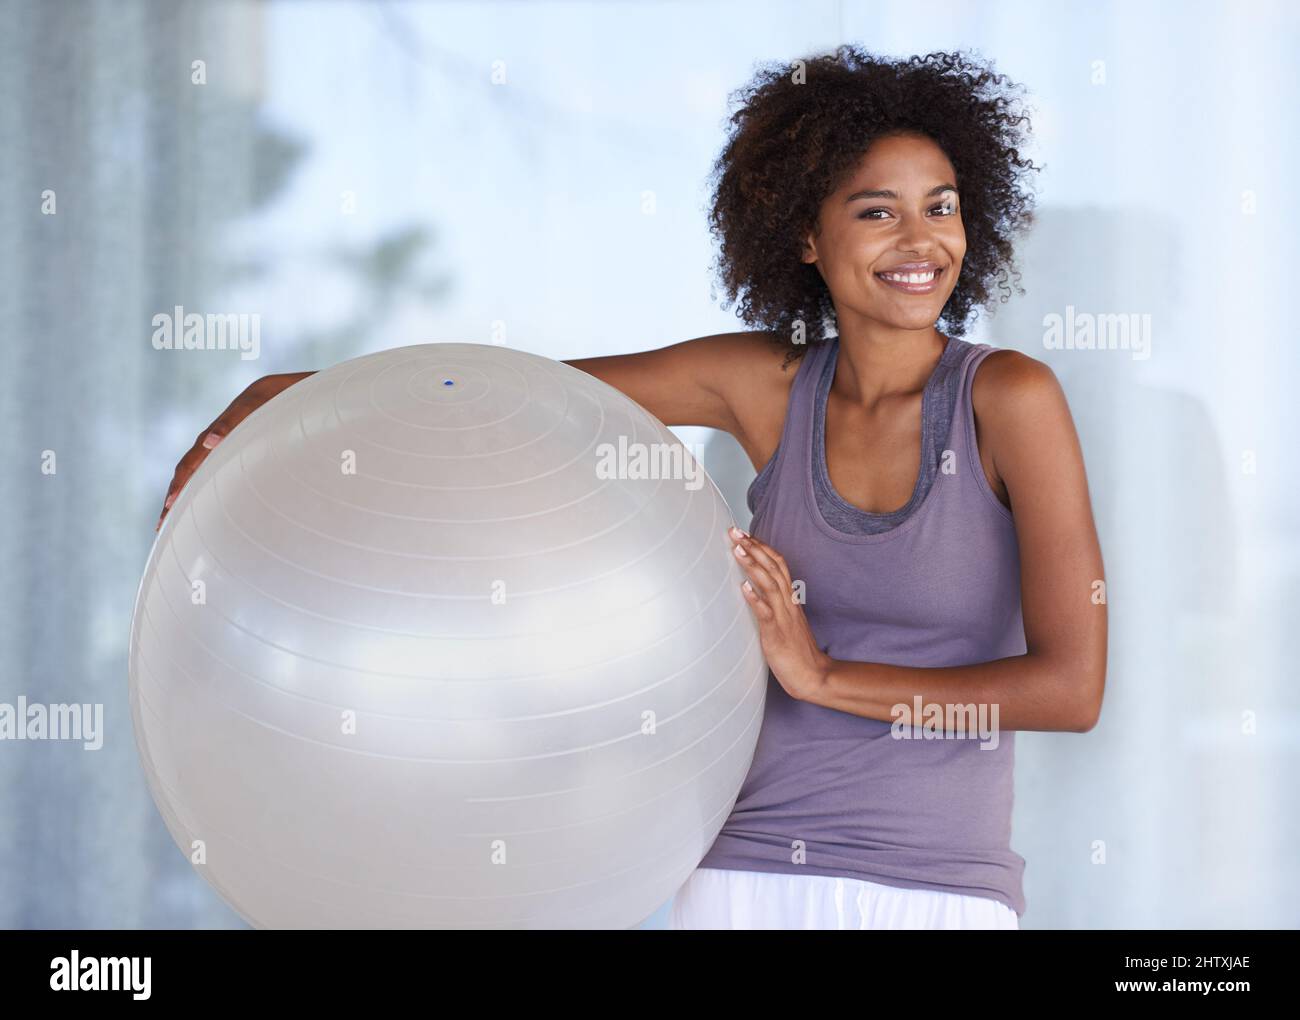 Mein Fitnessgeheimnis. Beschnittenes Porträt einer attraktiven jungen Frau, die mit einem Übungsball steht. Stockfoto